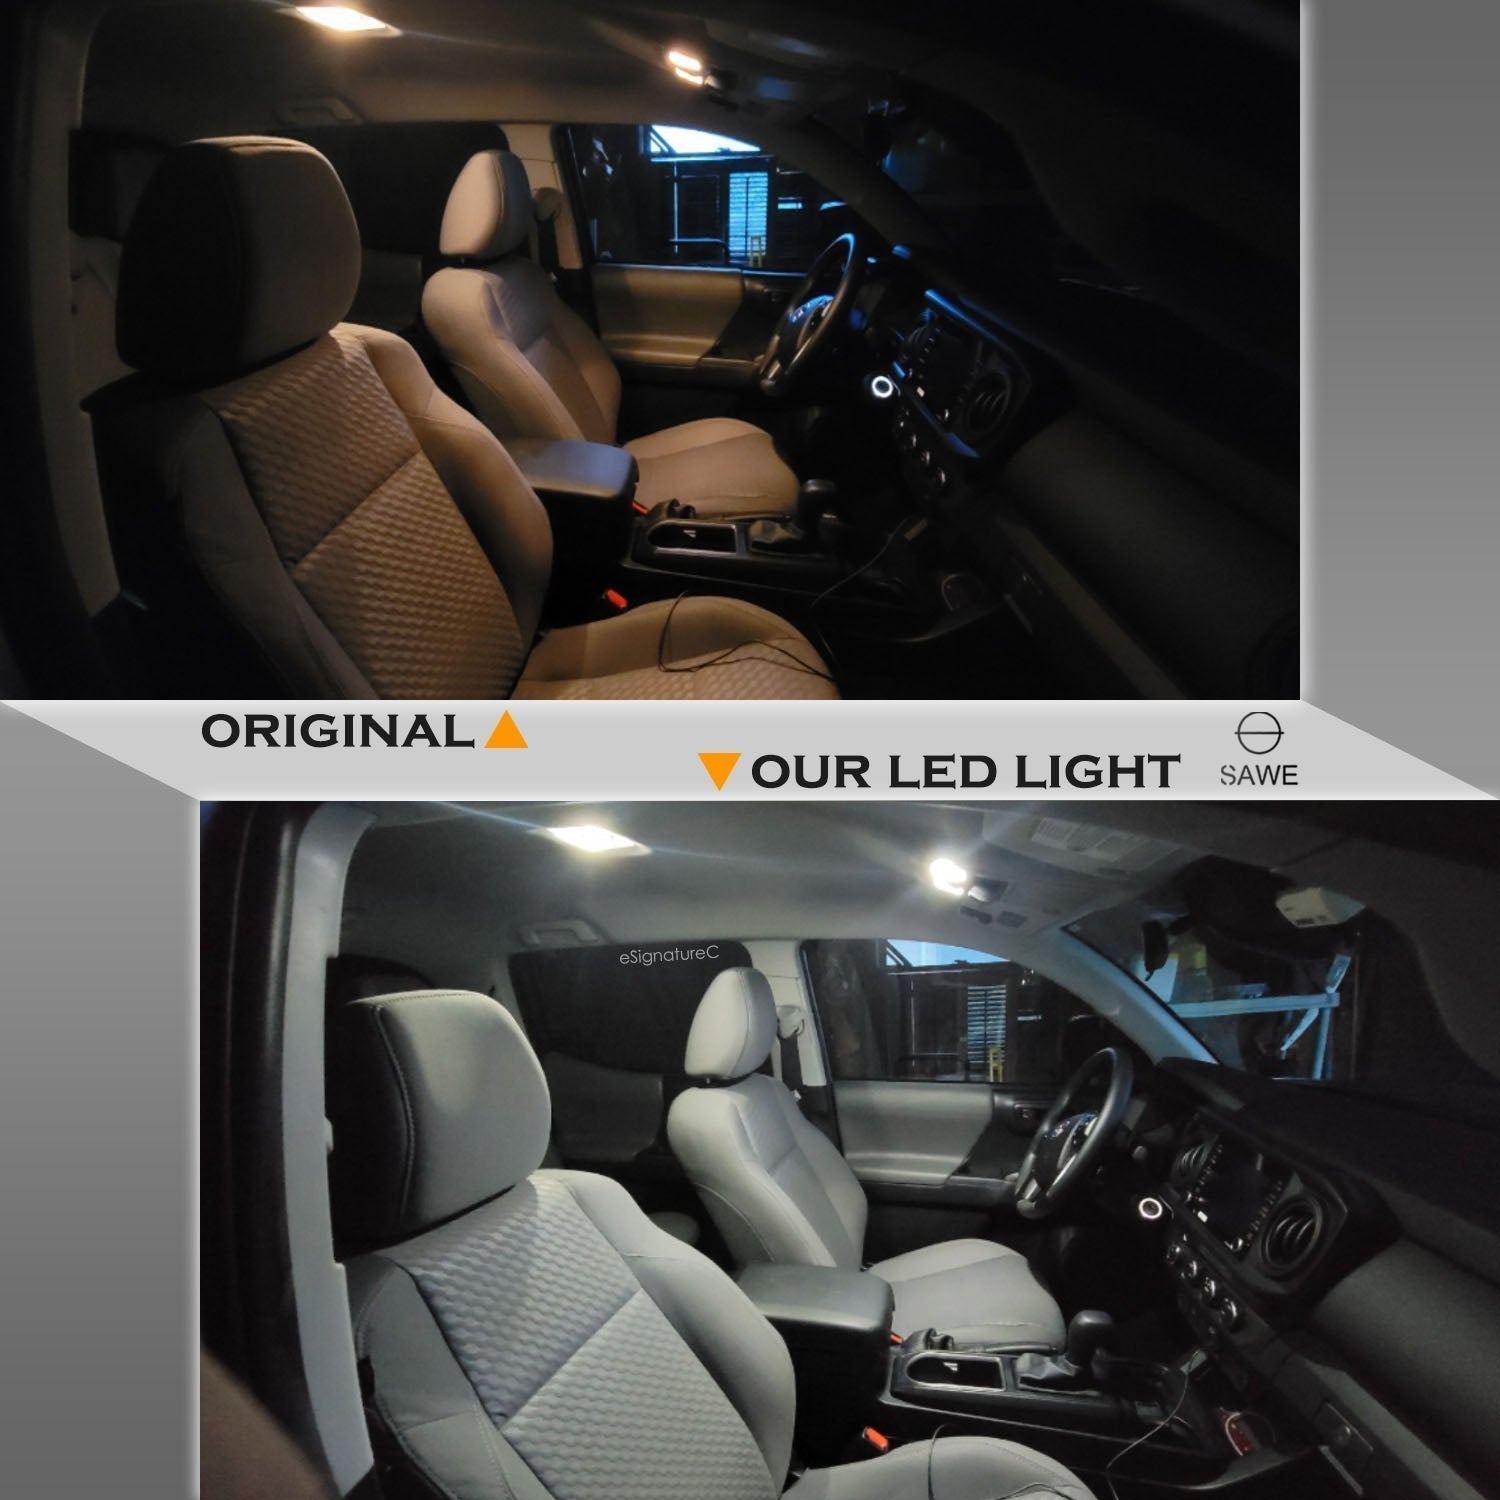 For Toyota Rav4 Interior LED Lights - Dome & Map Lights Package Kit for 2006 - 2015 - White